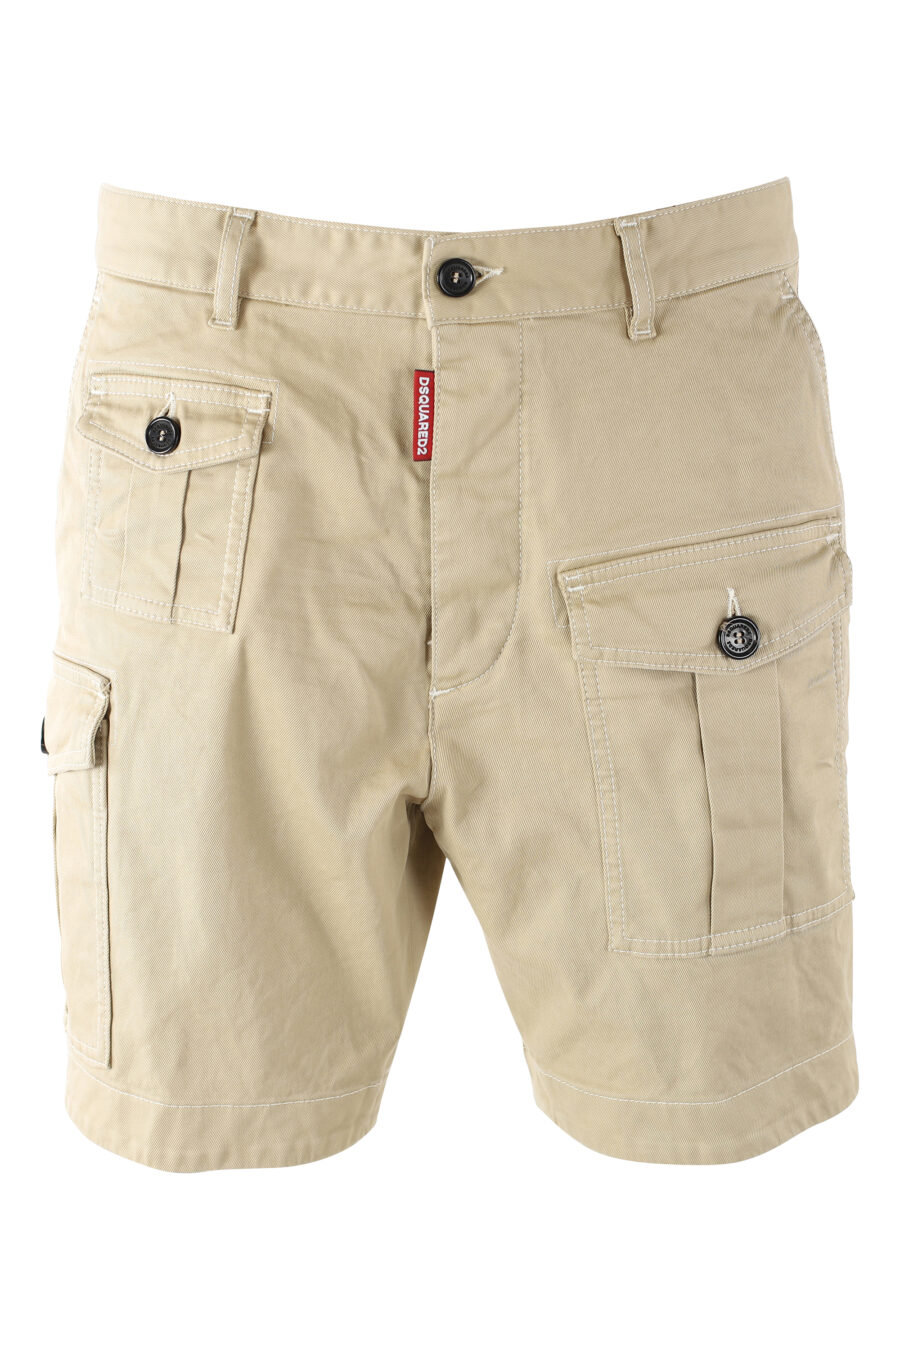 Pantalón corto beige "sexy cargo shorts" - IMG 9708